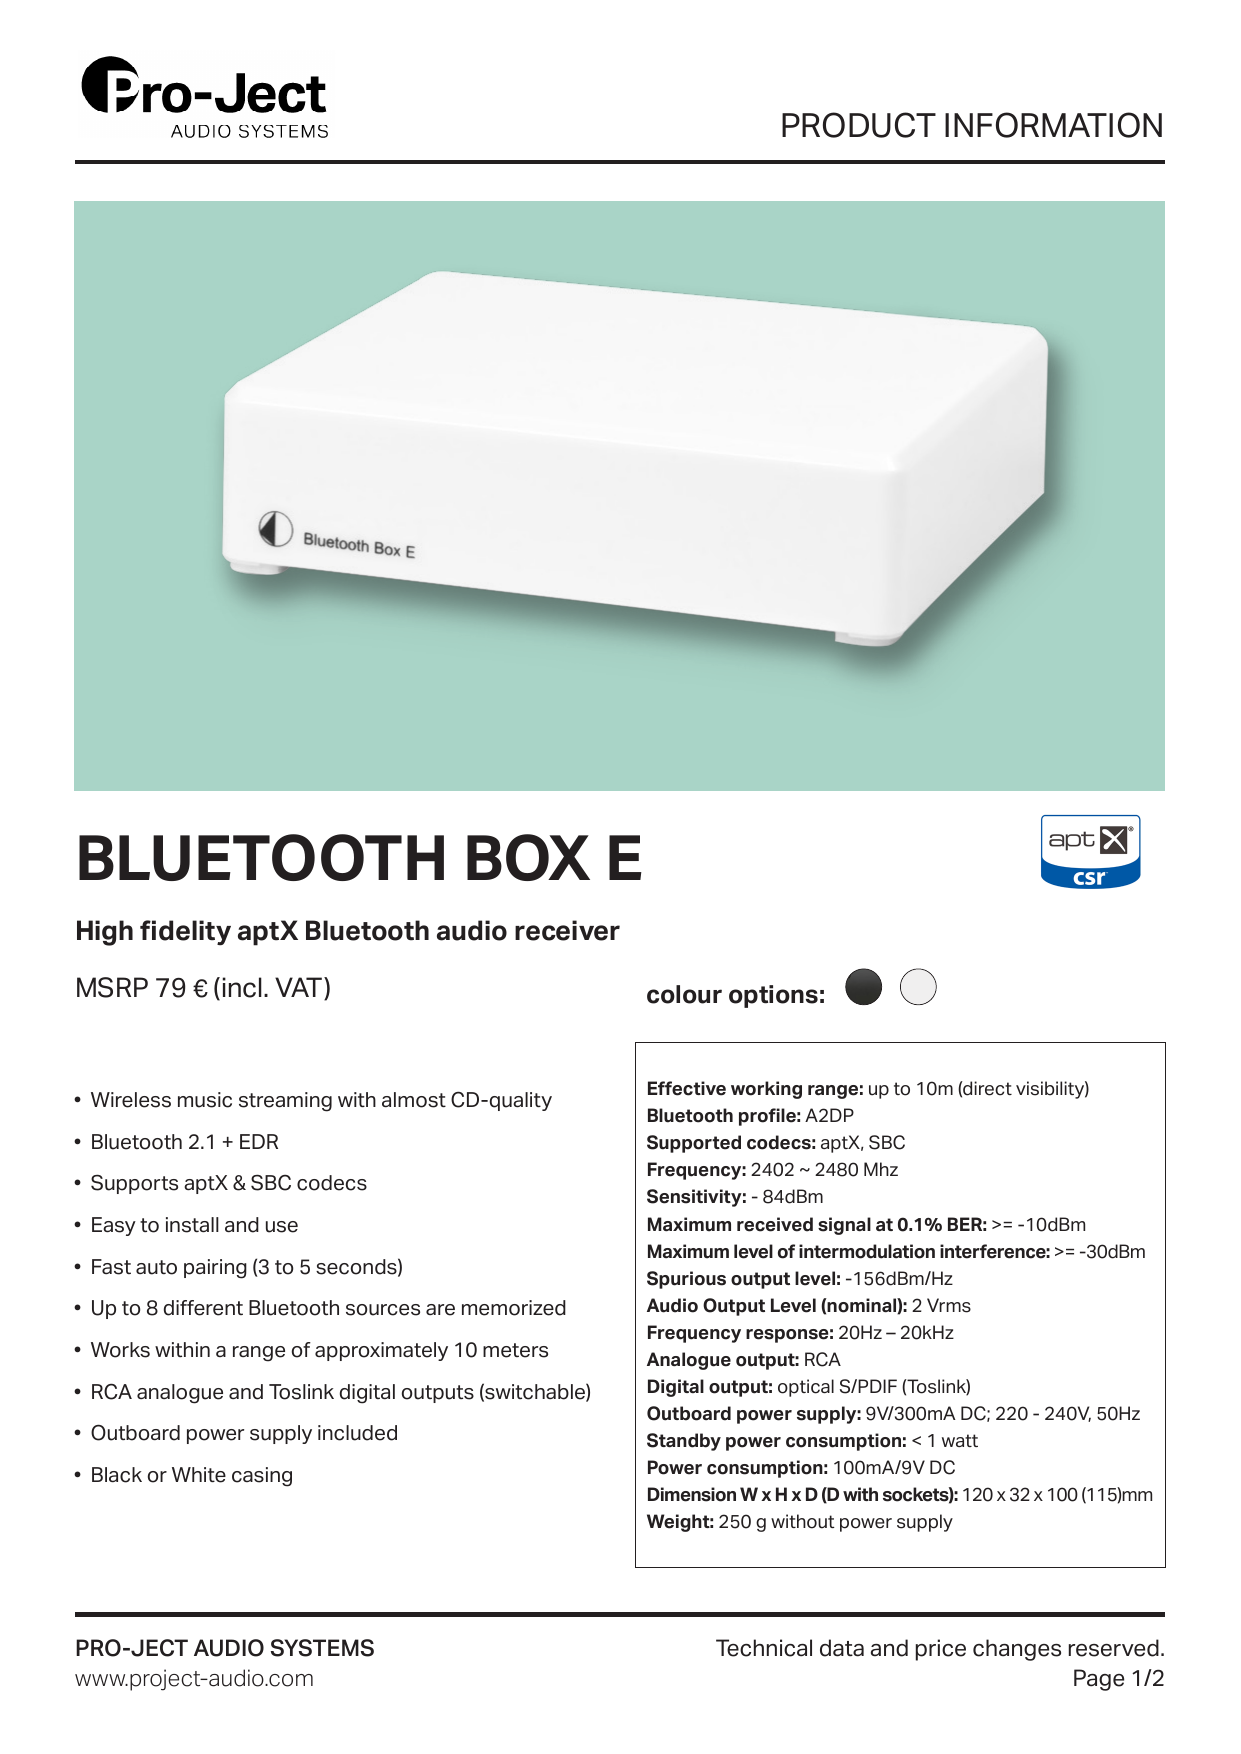 Pro-Ject Bluetooth Box E Weiss 